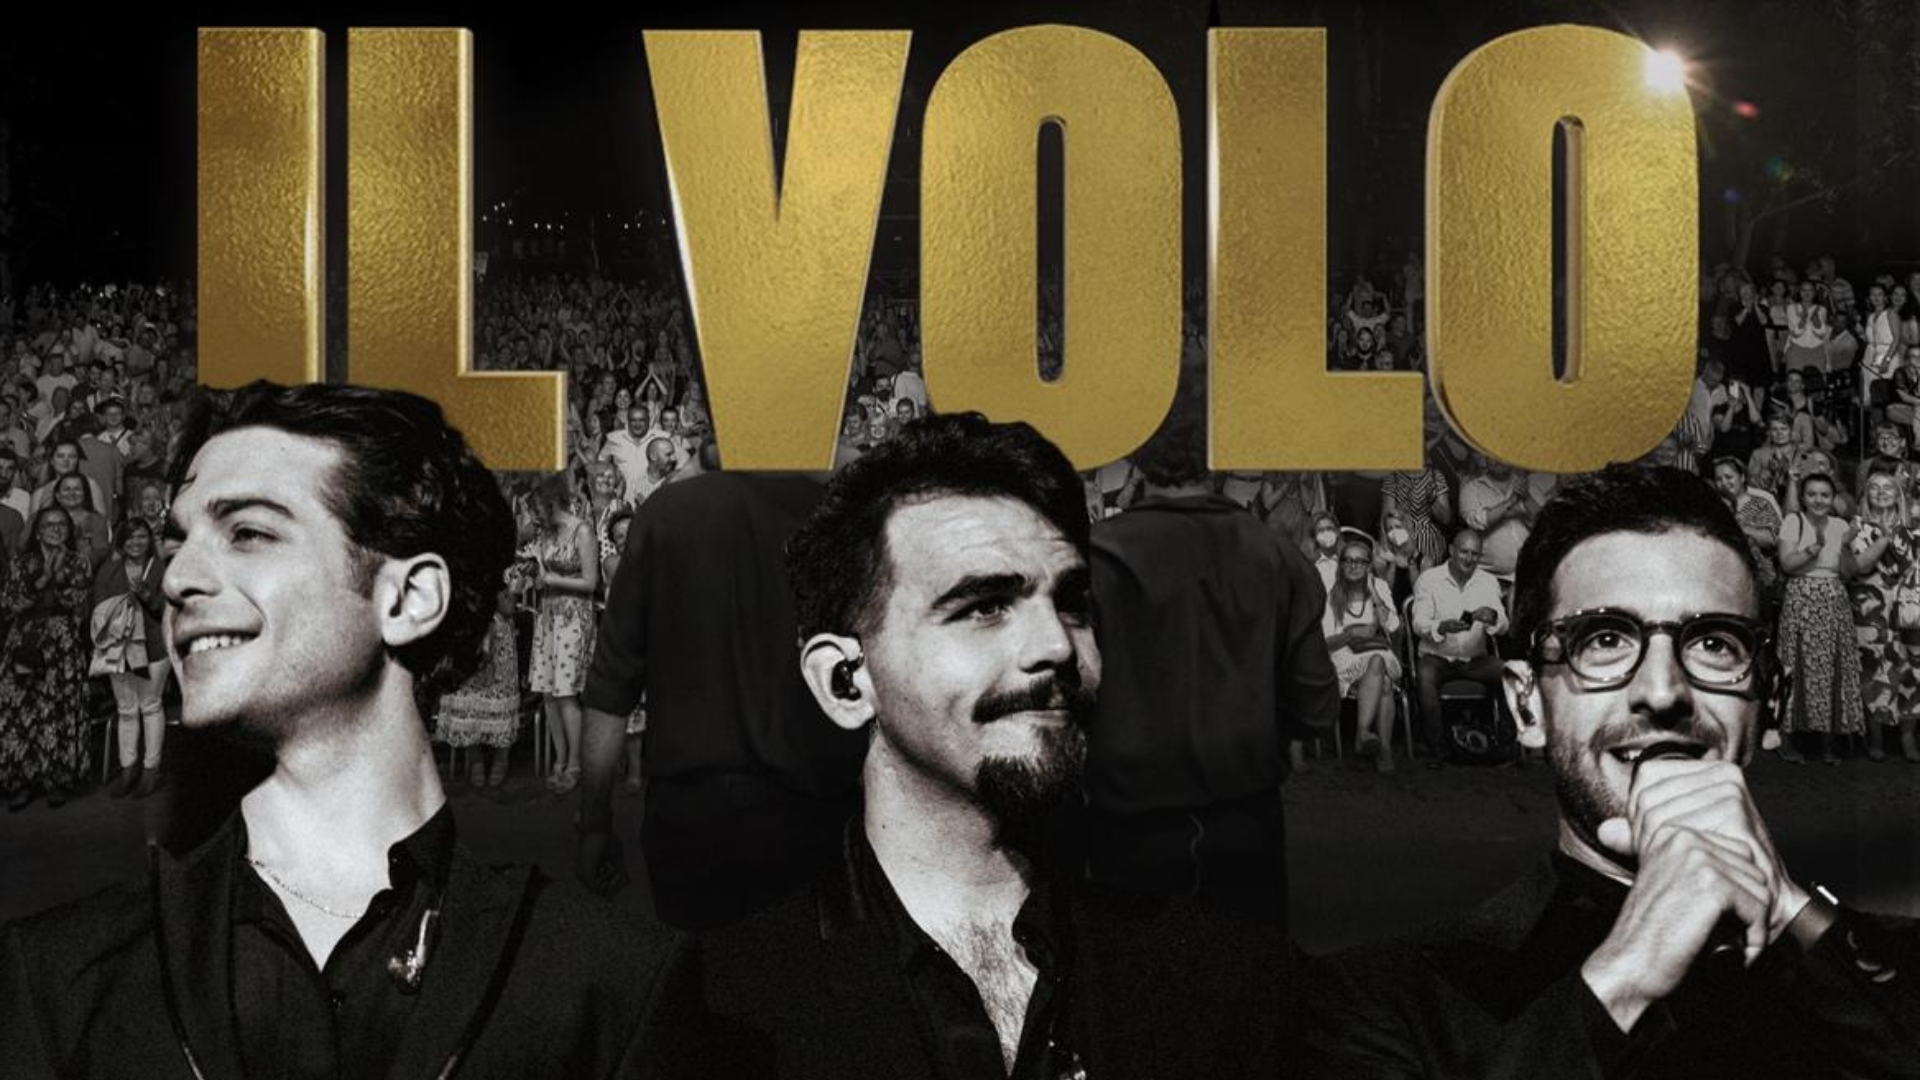 A foto mostra o trio italiano IL VOLO em preto e branco com o nome do trio estampado atrás em legras garrafais e douradas.